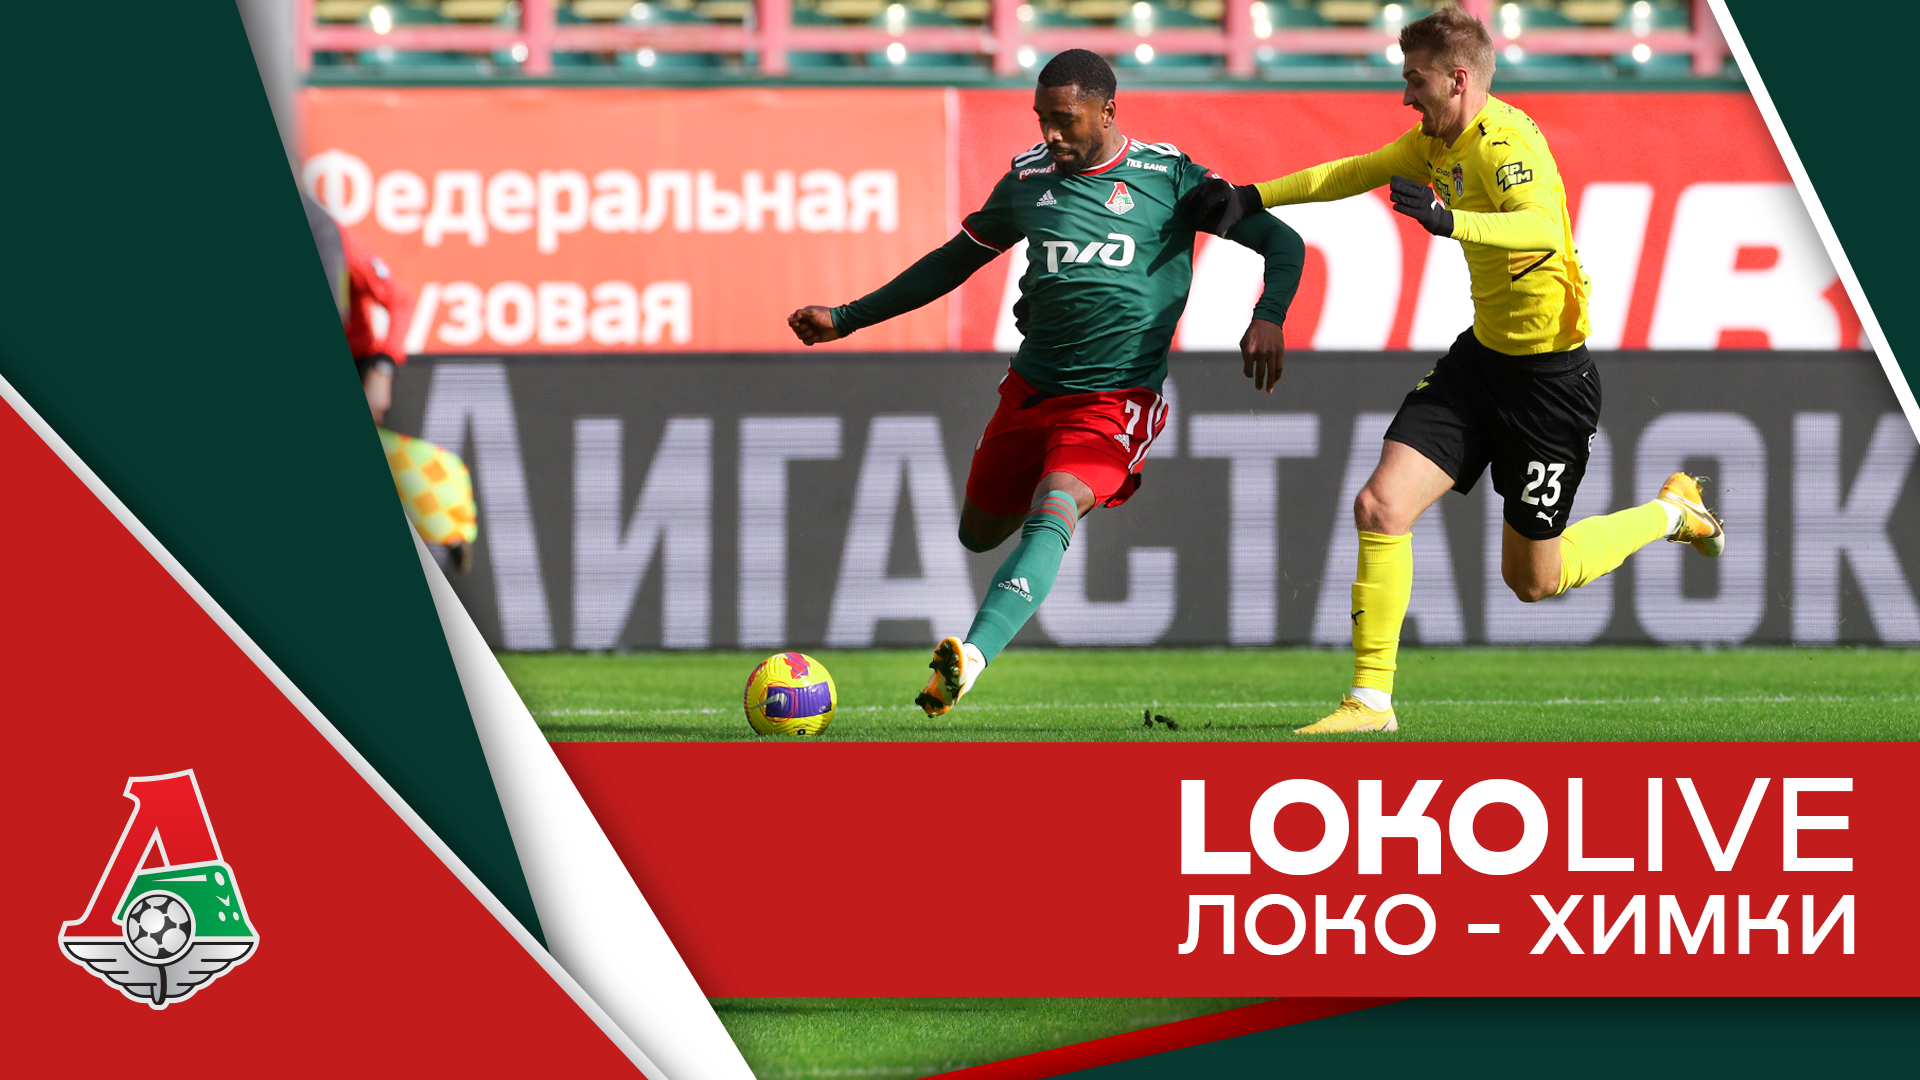 LOKO LIVE // A victory against Khimki